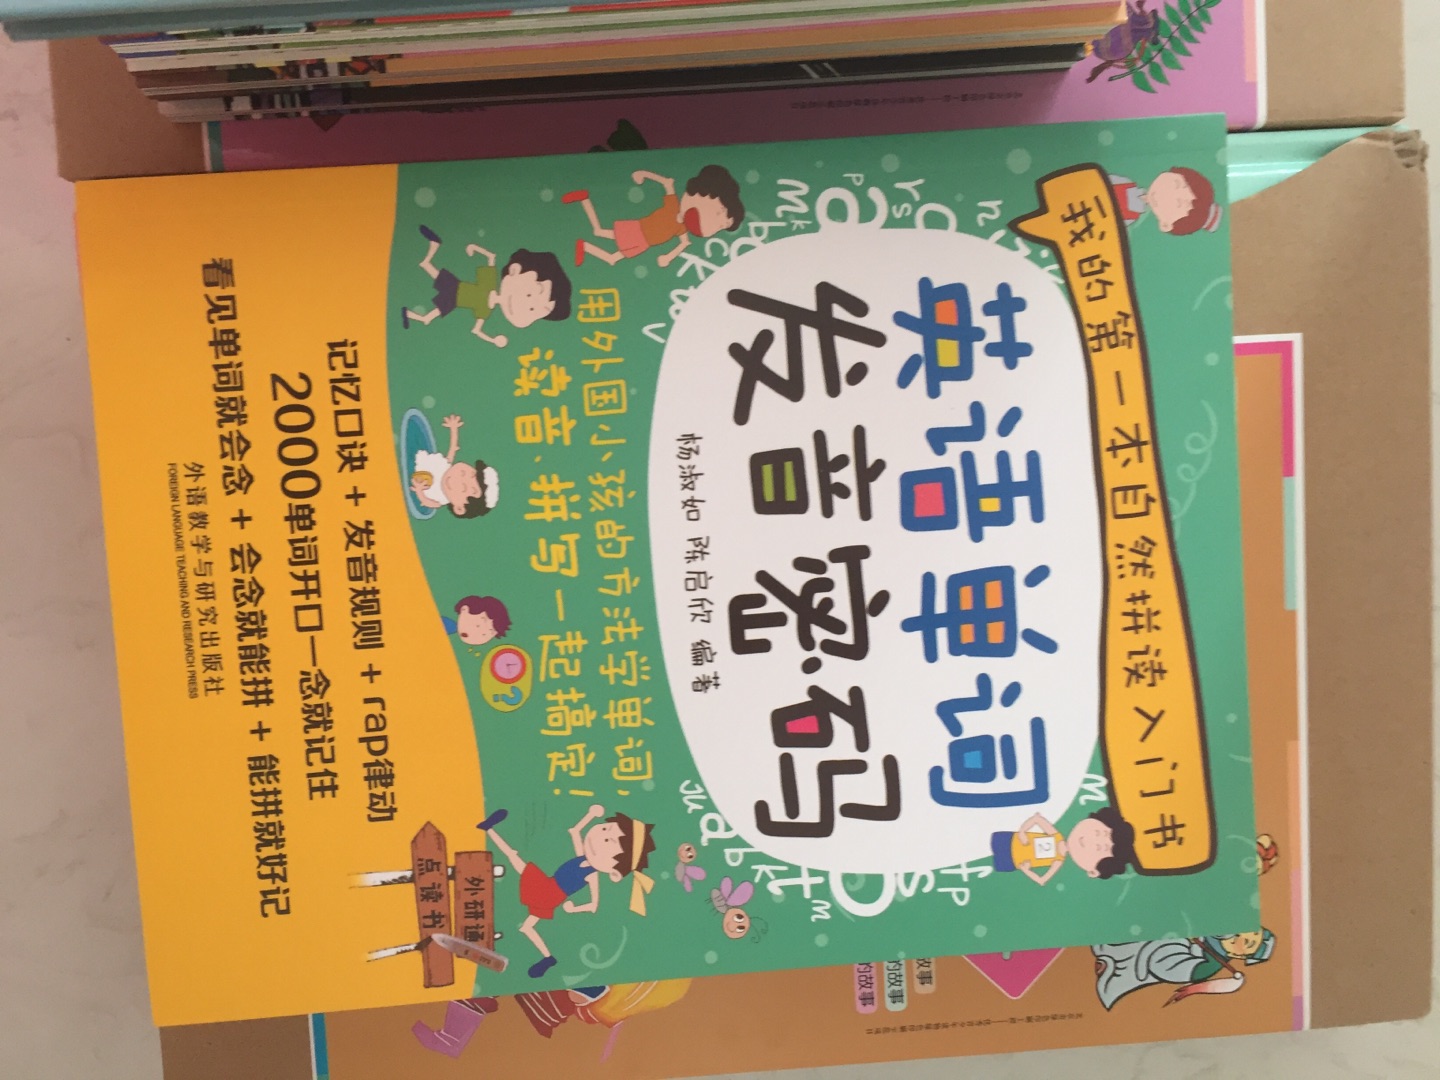 很好的一套书，种草很久，对孩子学习好英语很有帮助并给予指导。